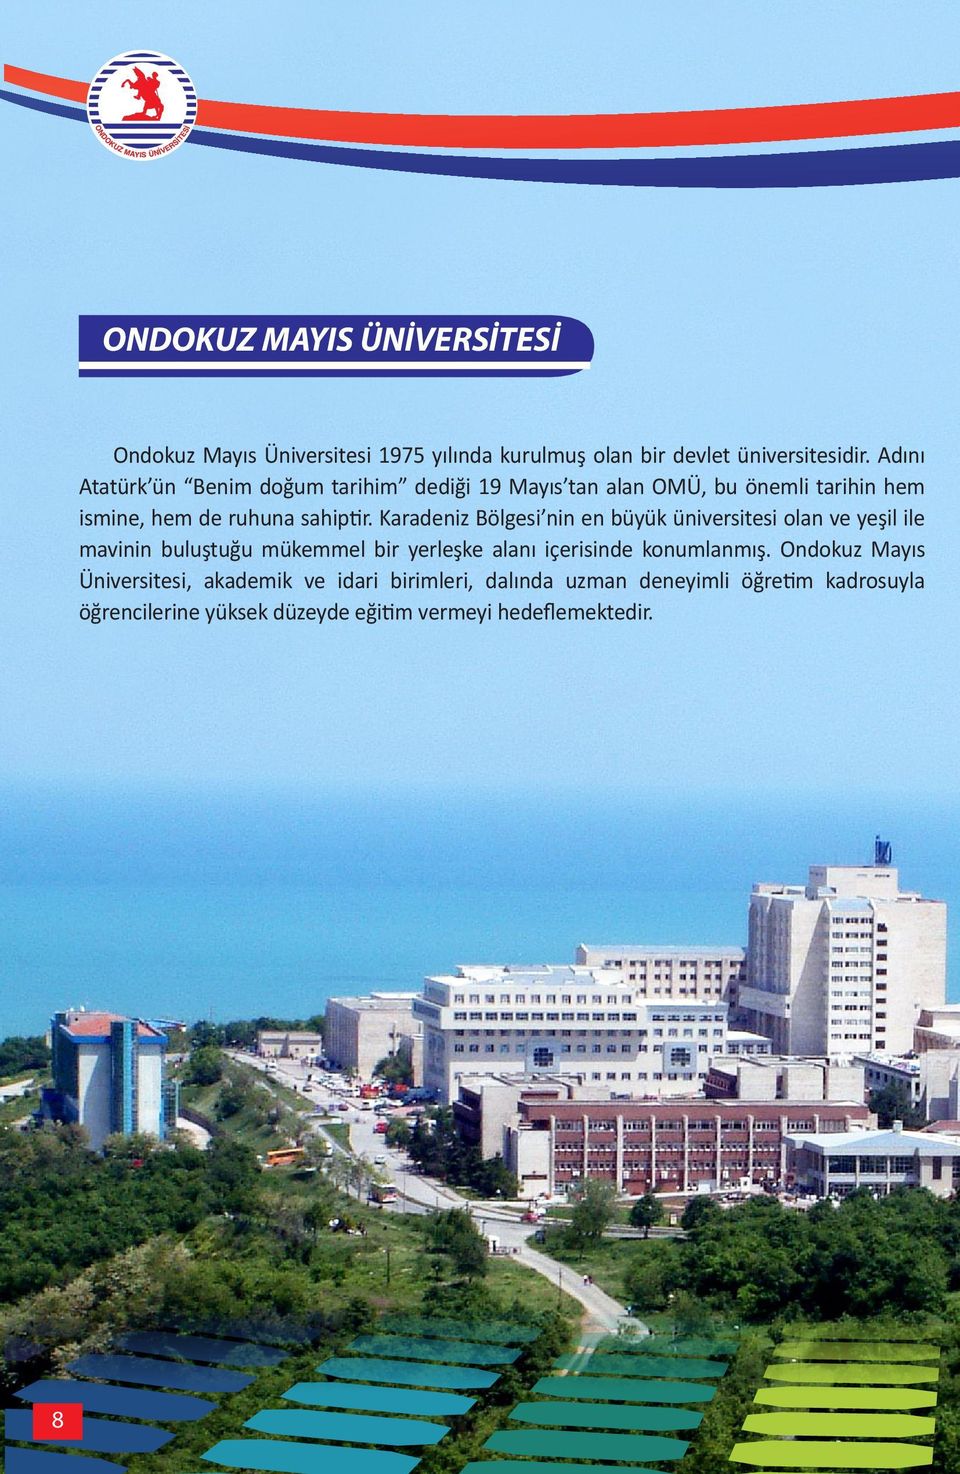 Karadeniz Bölgesi nin en büyük üniversitesi olan ve yeşil ile mavinin buluştuğu mükemmel bir yerleşke alanı içerisinde konumlanmış.